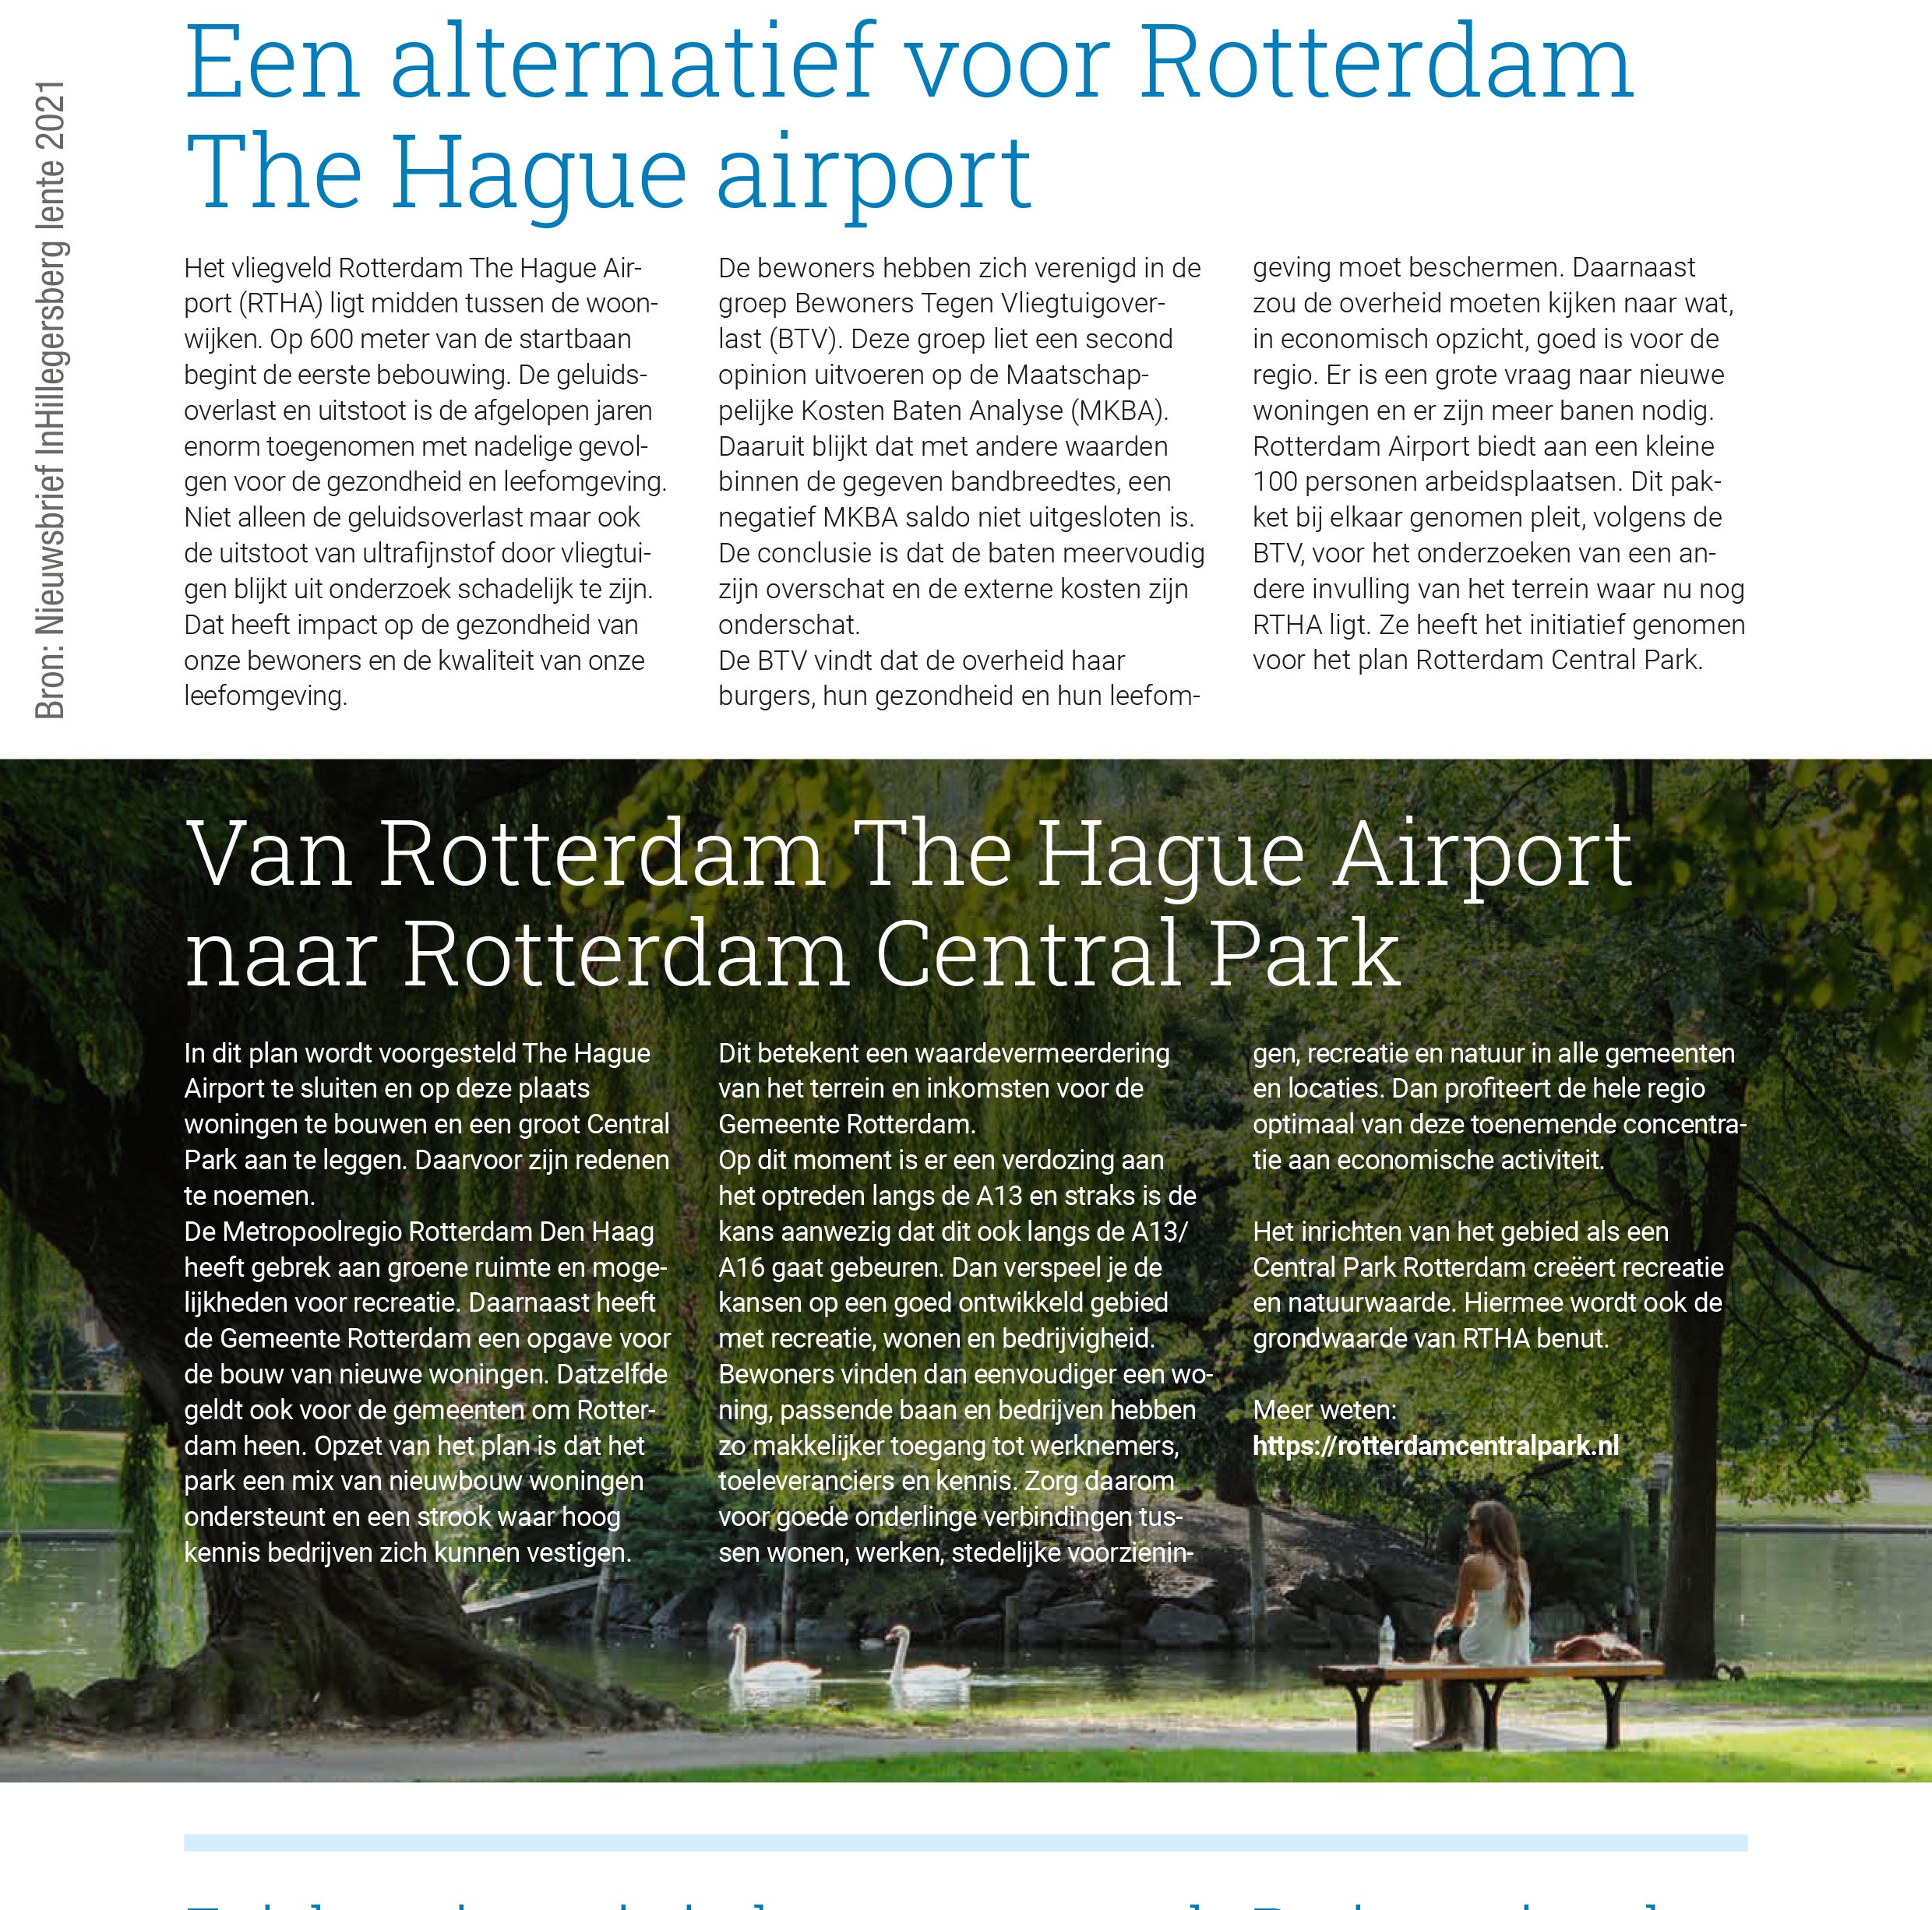 Een alternatief voor Rotterdam The Hague airport